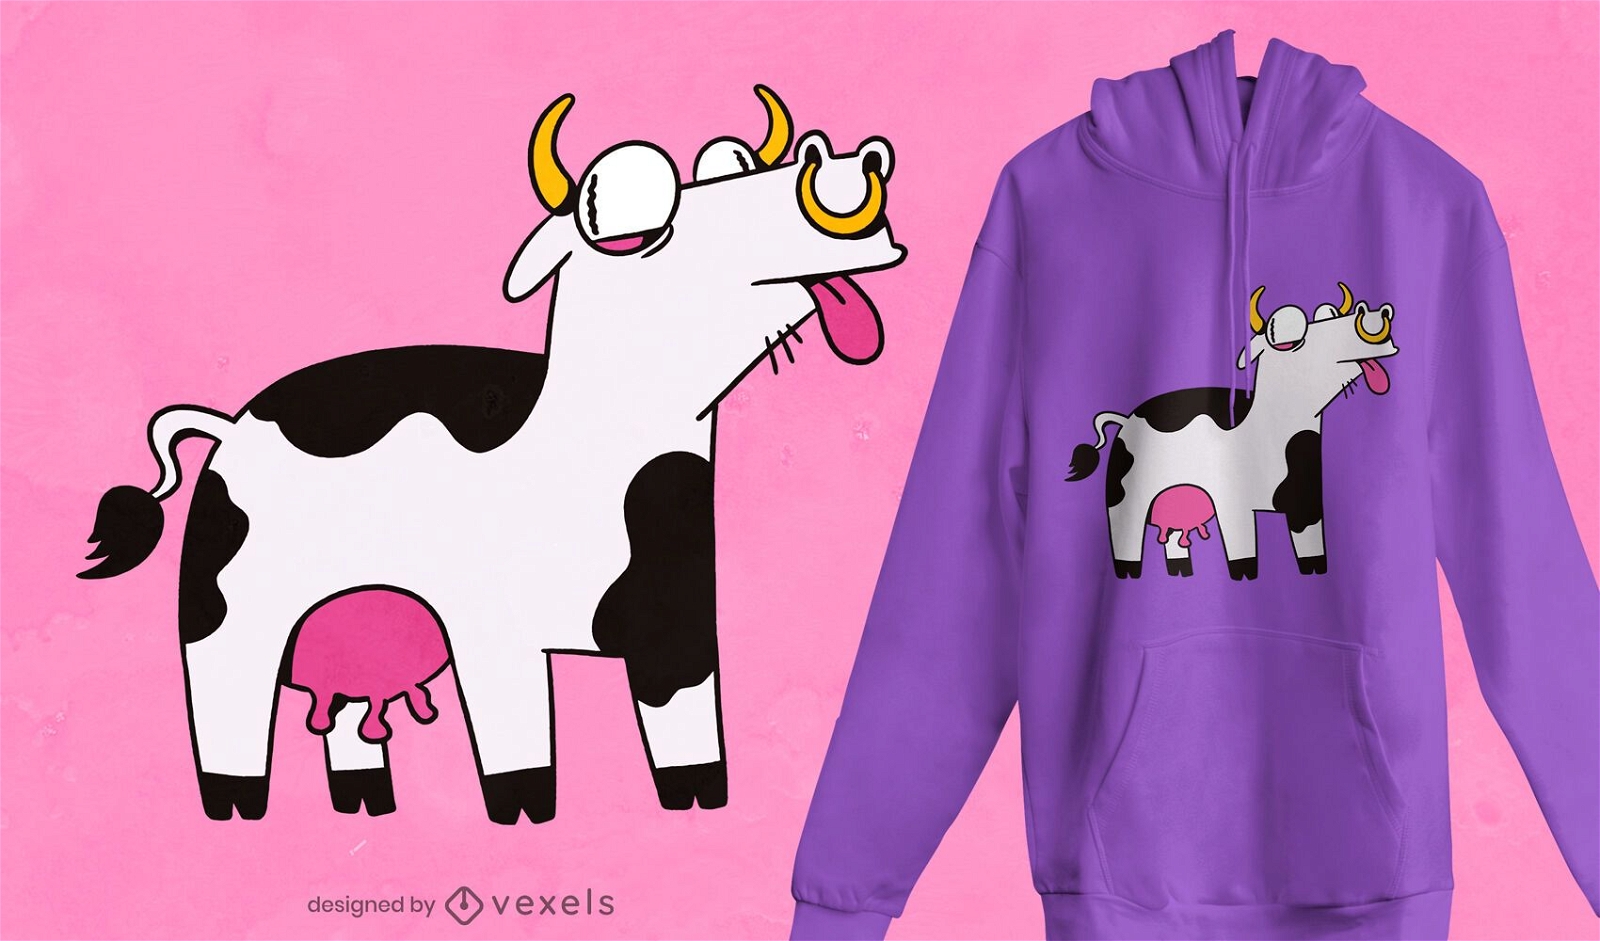 Crazy cow t-shirt design